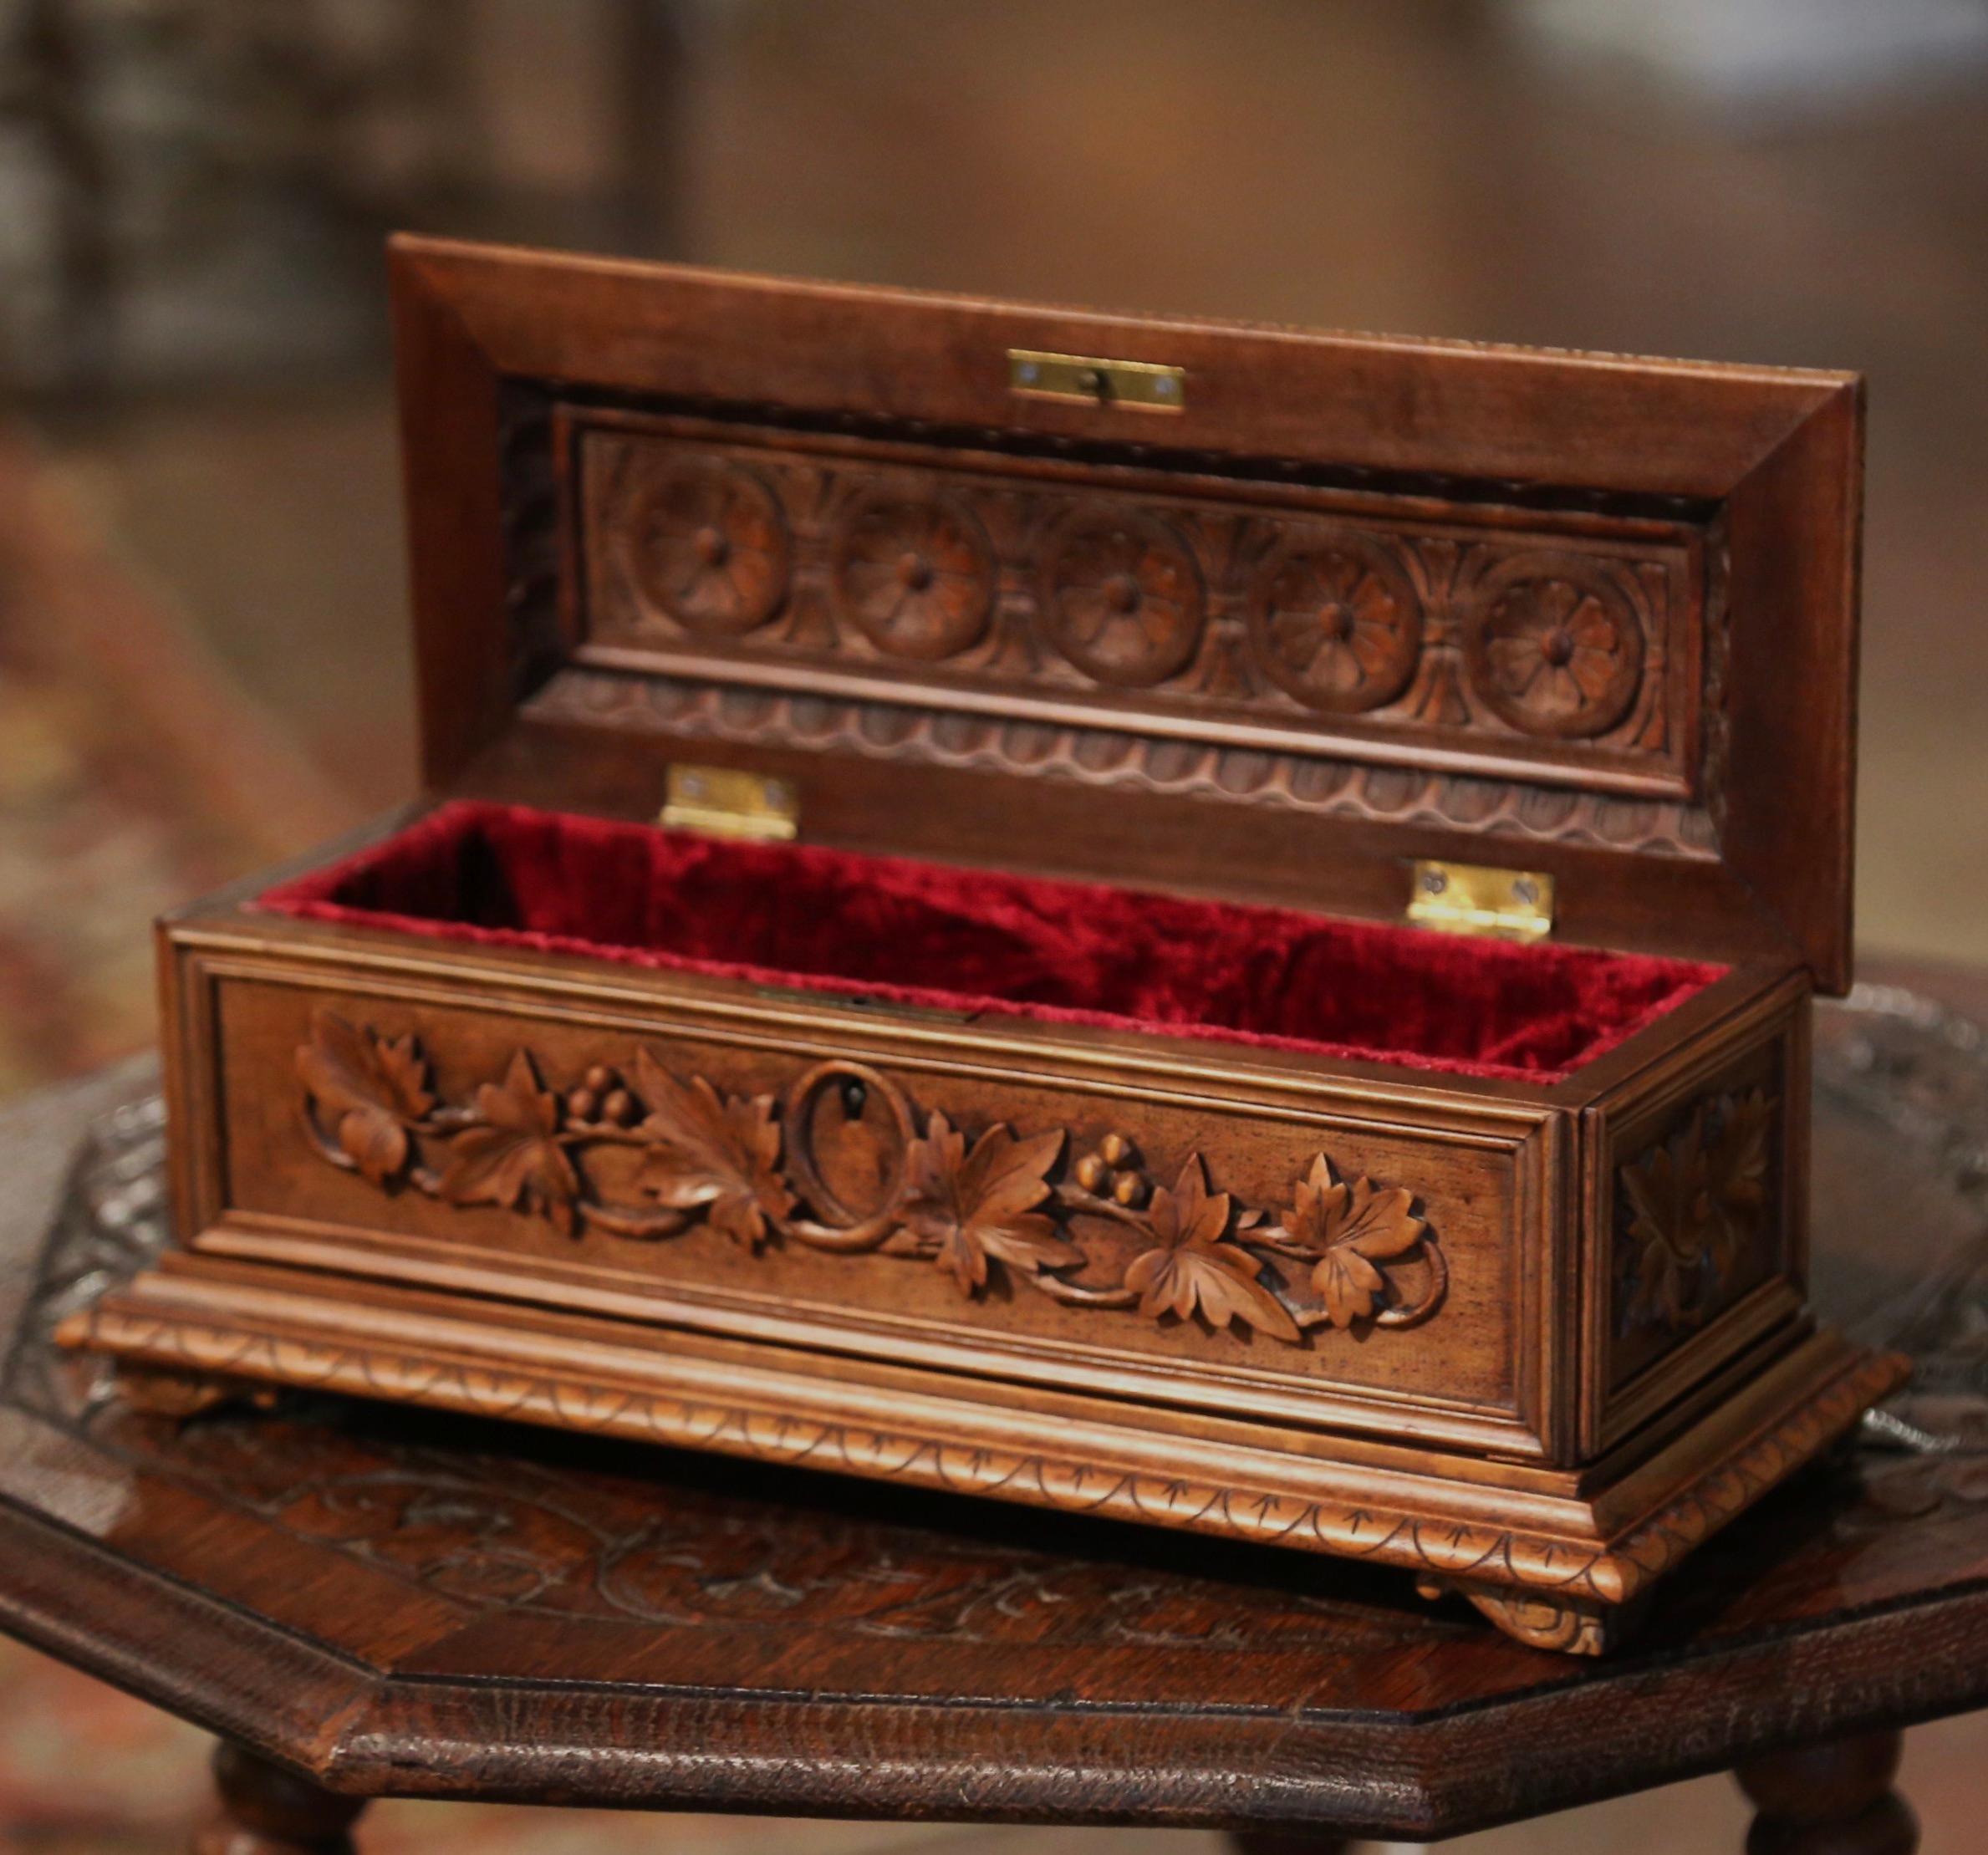 19th Century French Black Forest Carved Walnut Jewelry Box with Bird Motifs 4